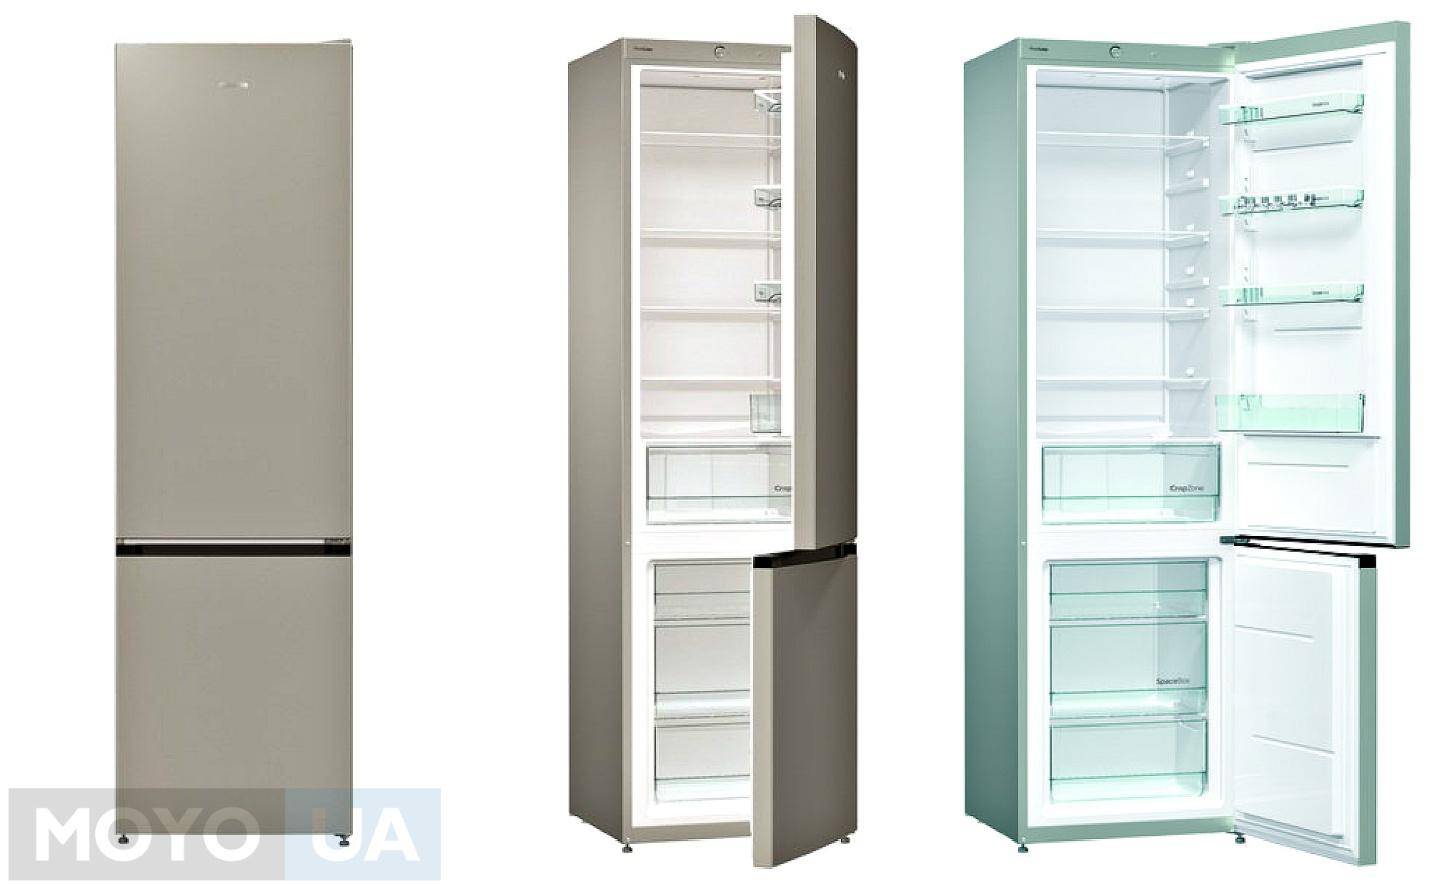 Холодильники марки gorenje: обзор моделей, описания, характеристики. рейтинг лучших холодильников gorenje в 2021 году